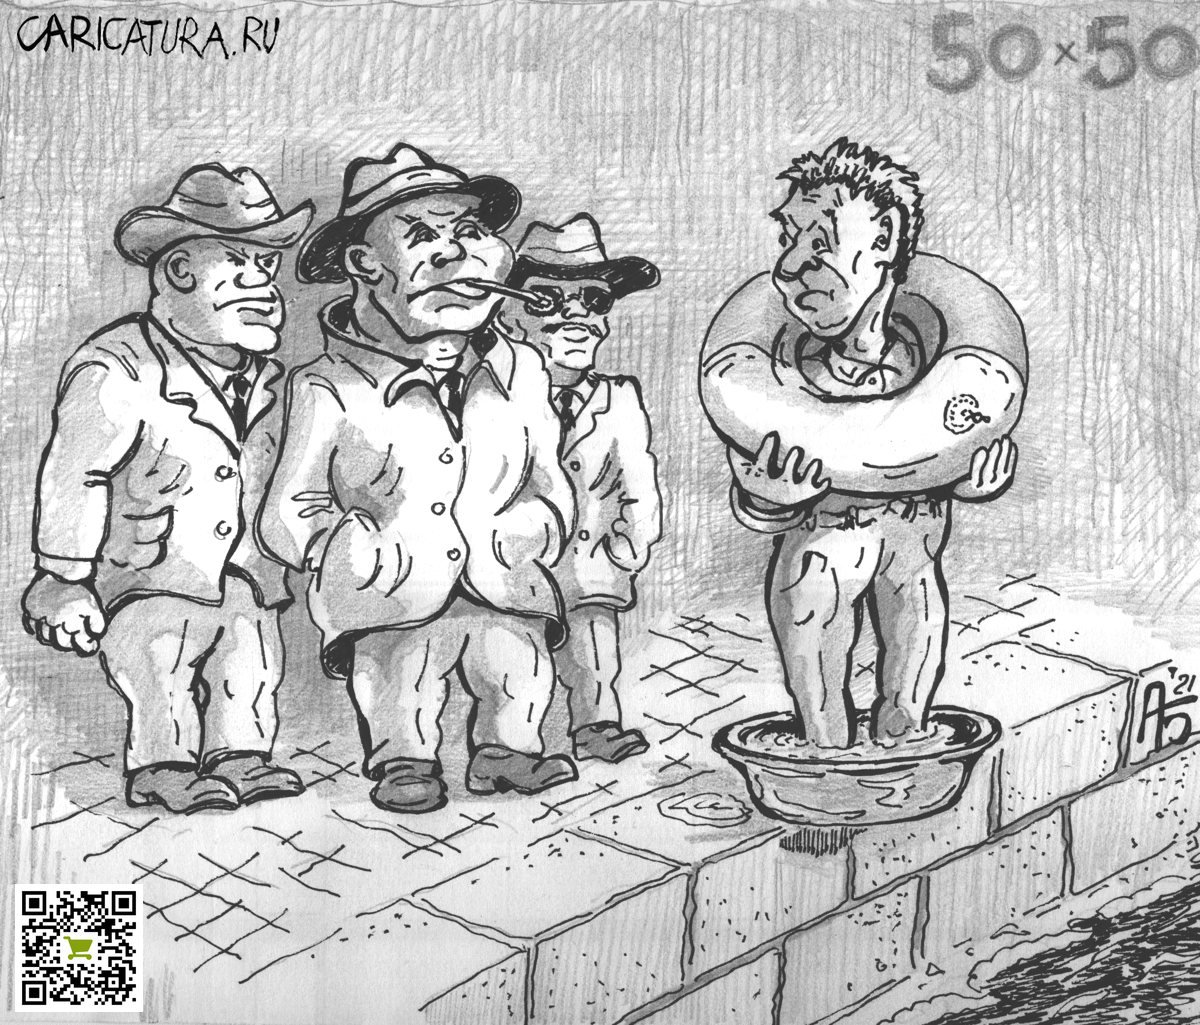 Карикатура "50 х 50", Александр Богданов